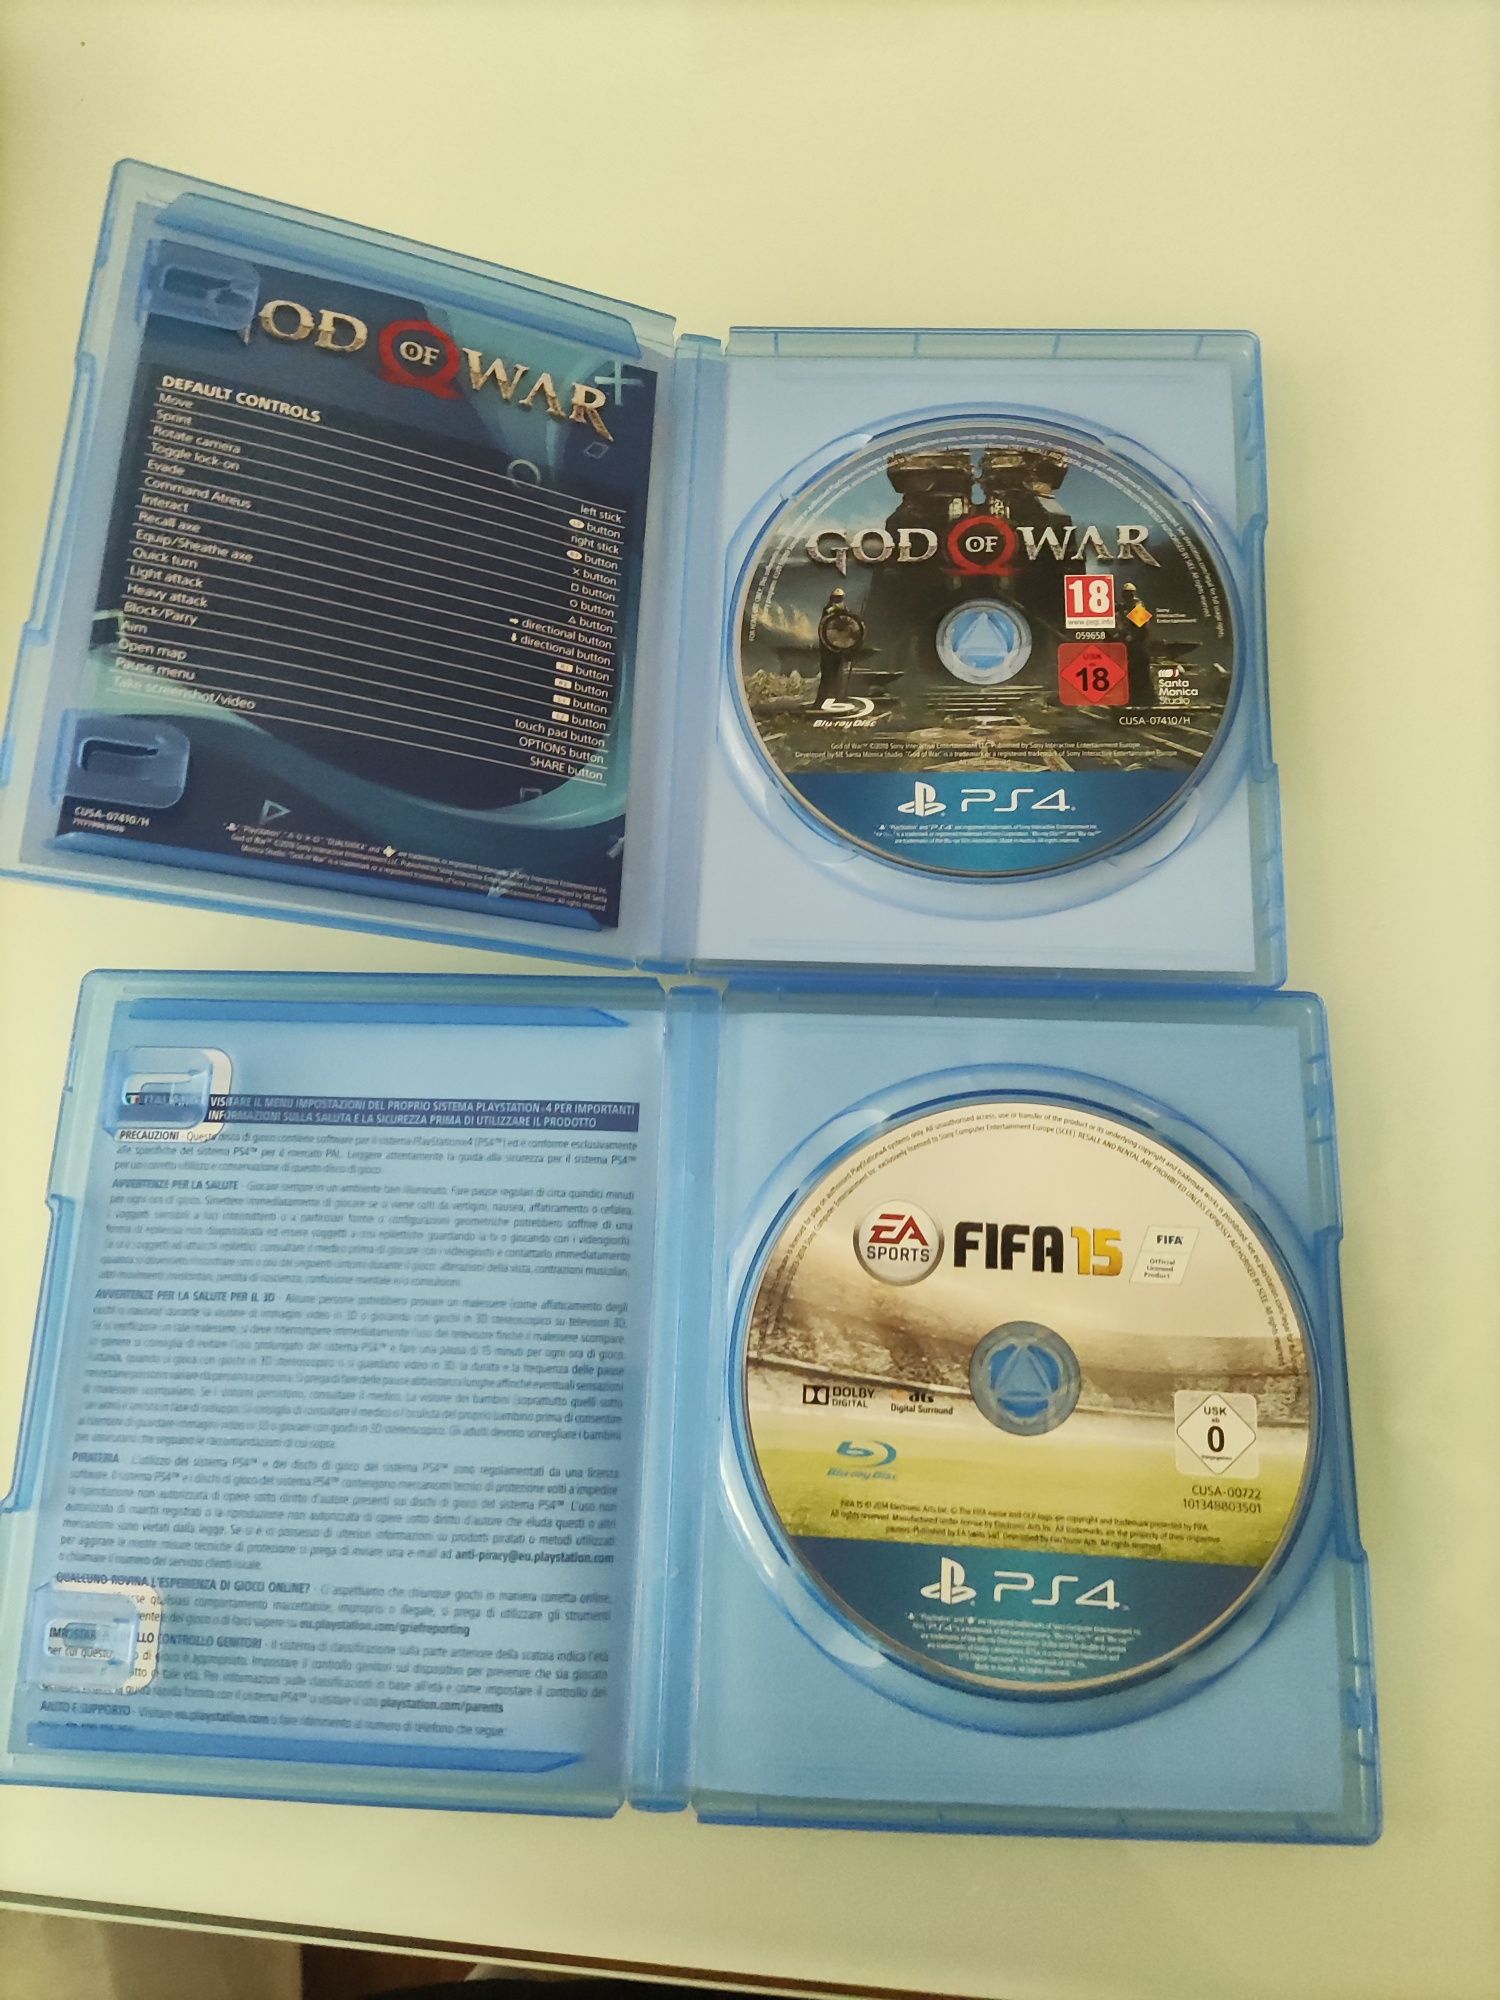 2 jocuri PS4:God of war și FIFA 15